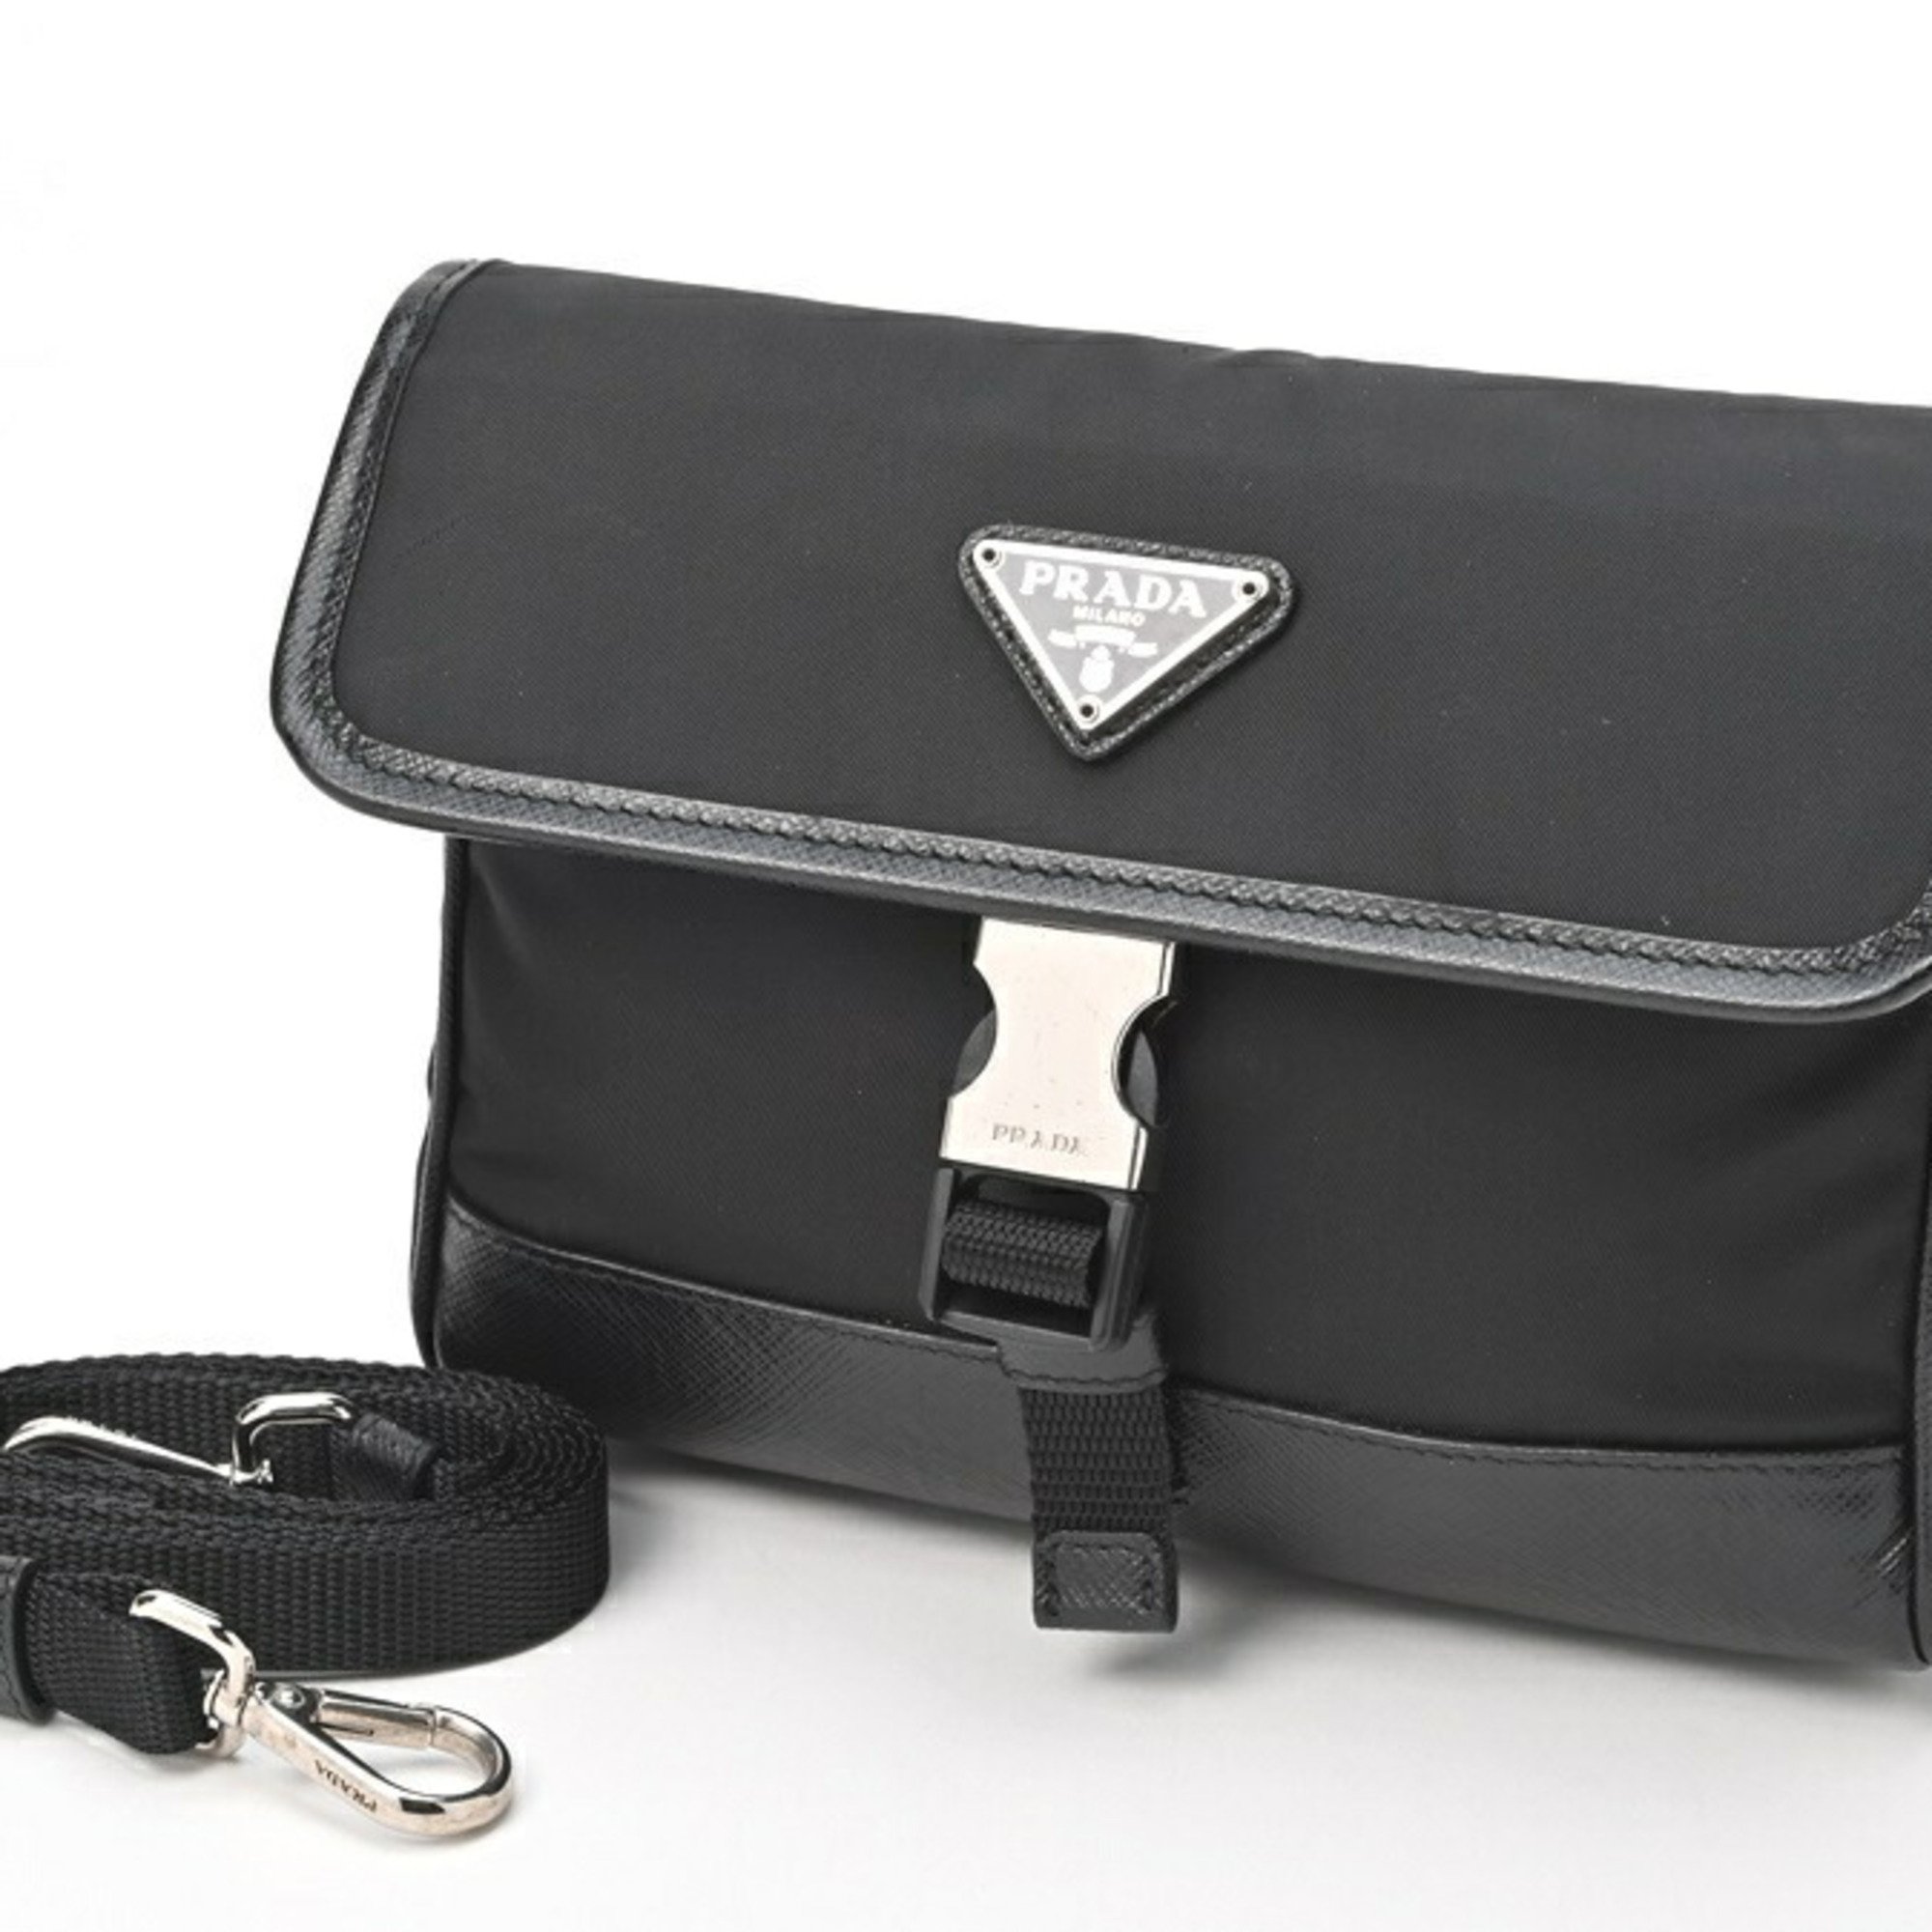 Prada Re-Nylon Saffiano Leather Smartphone Case Nylon 2ZH108 Black E-155096